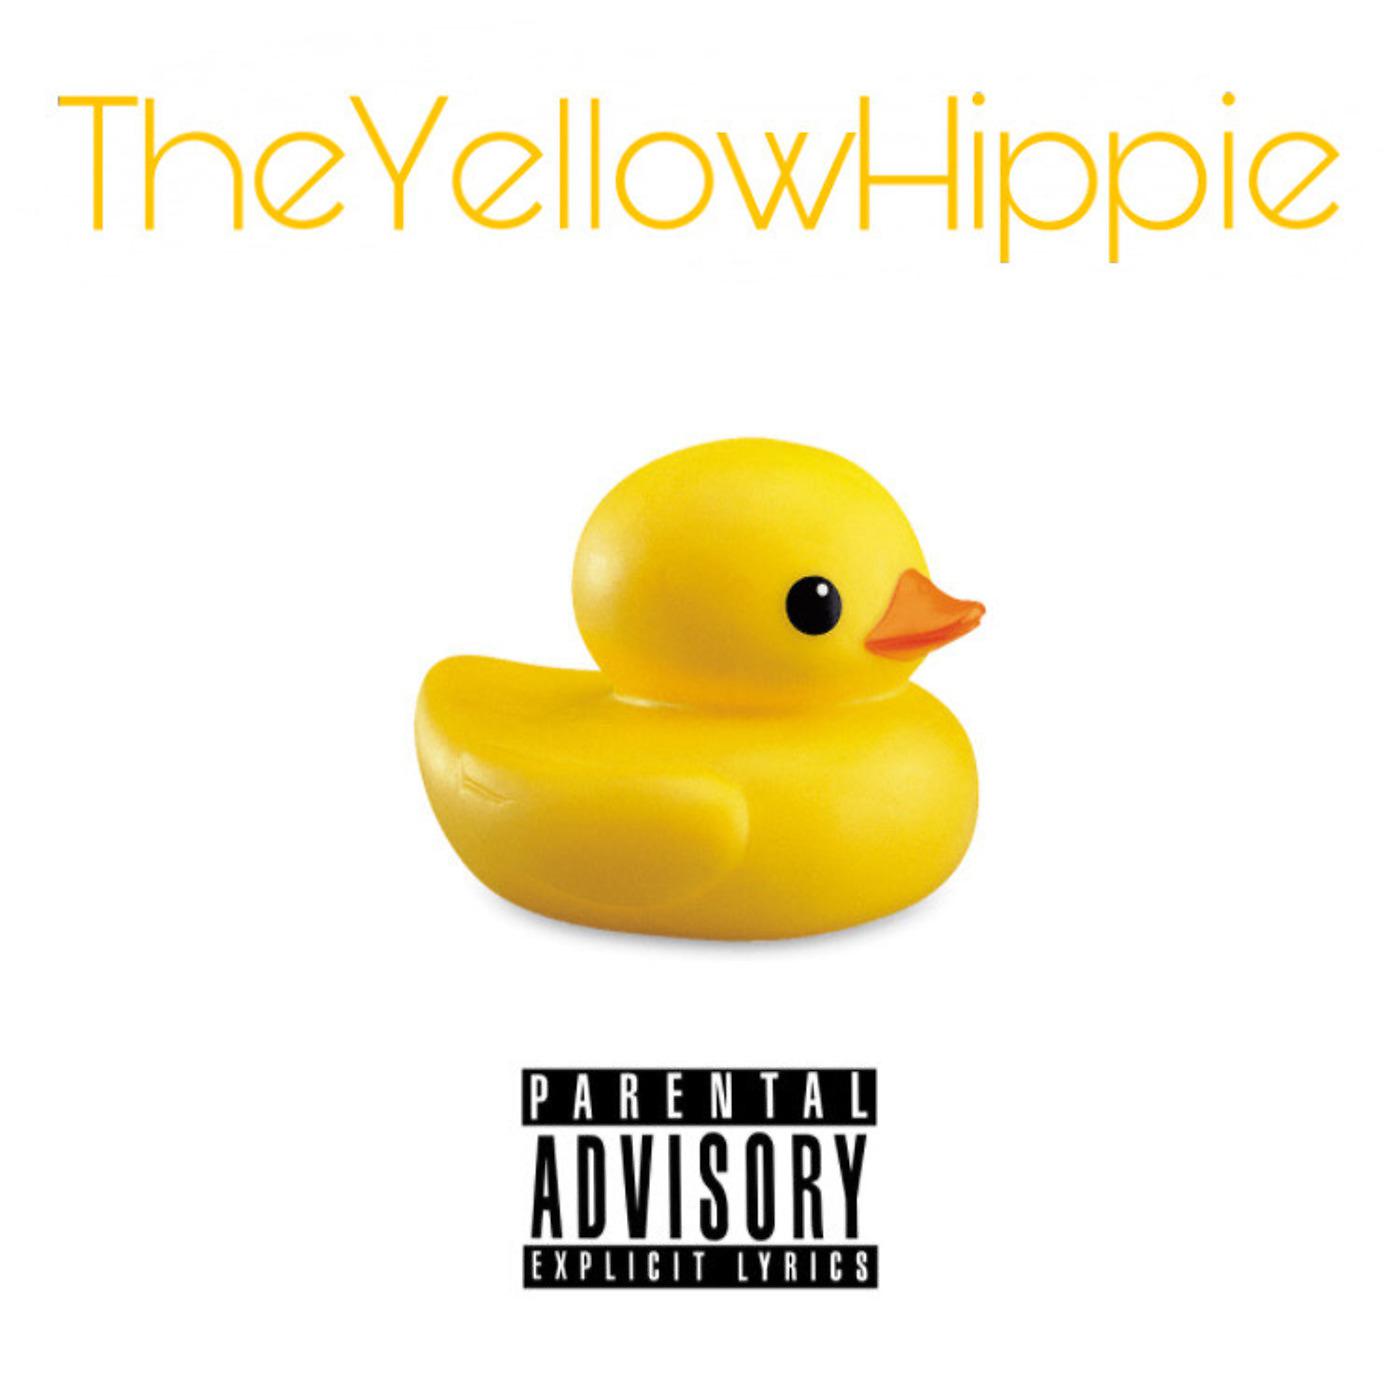 Постер альбома Duck